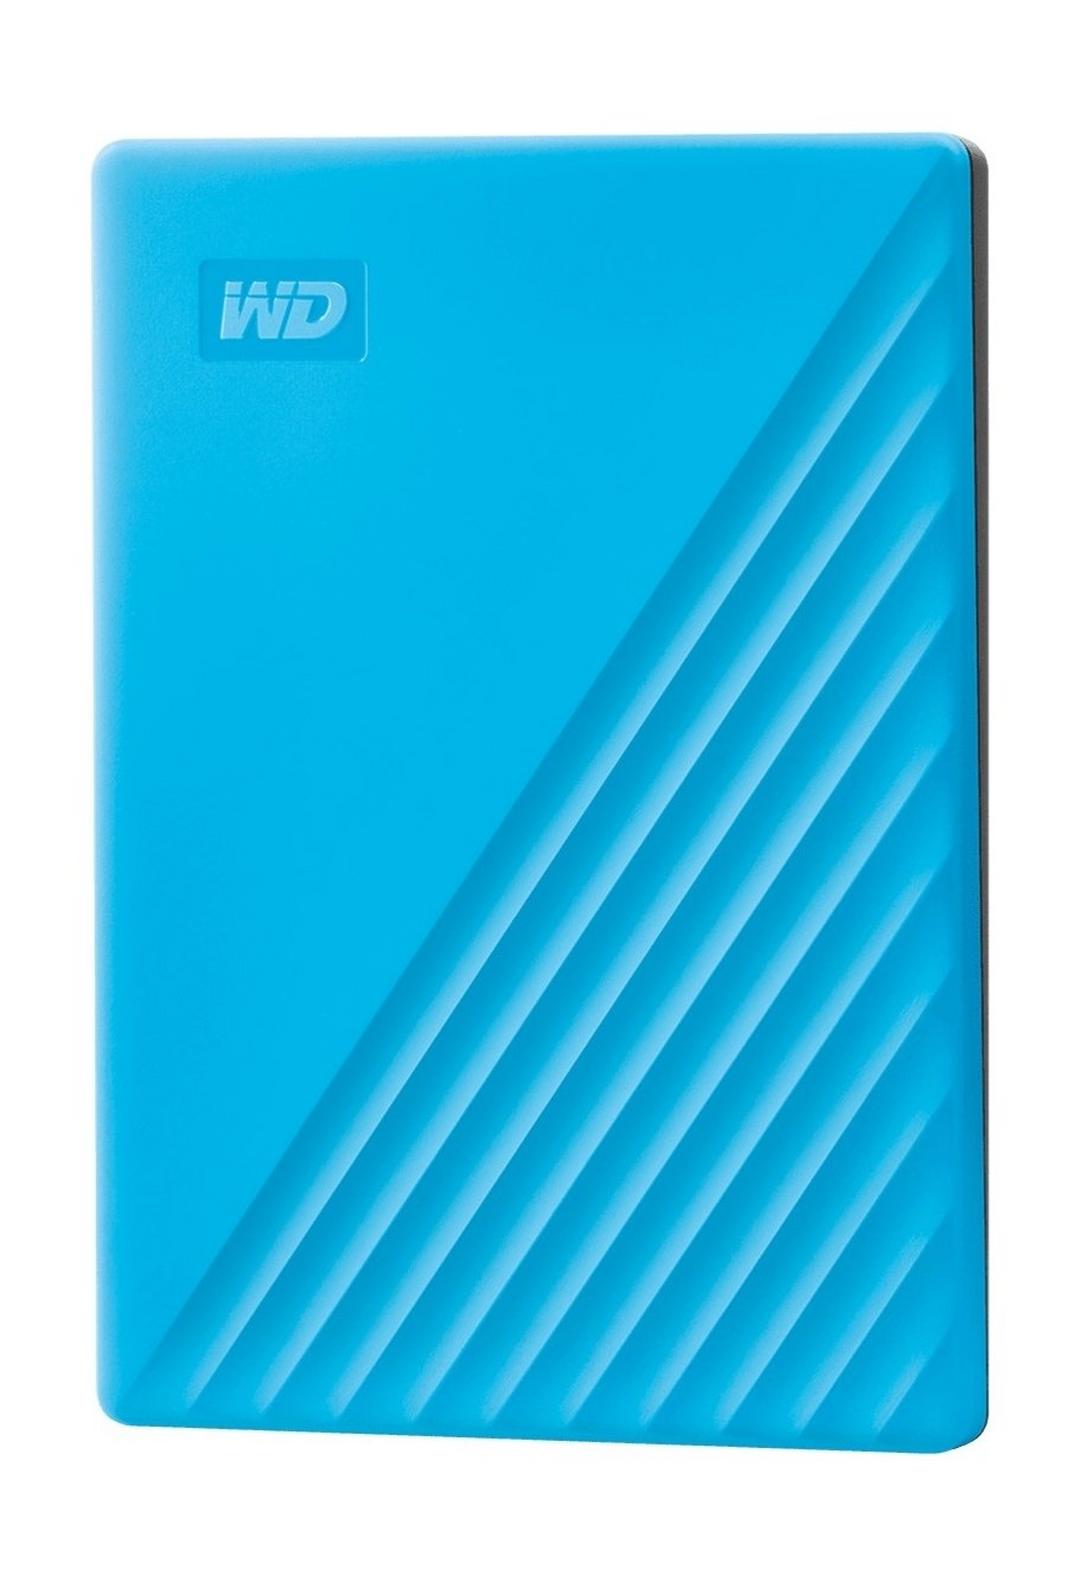 Western Digital My Passport 4TB Portable HDD - Blue